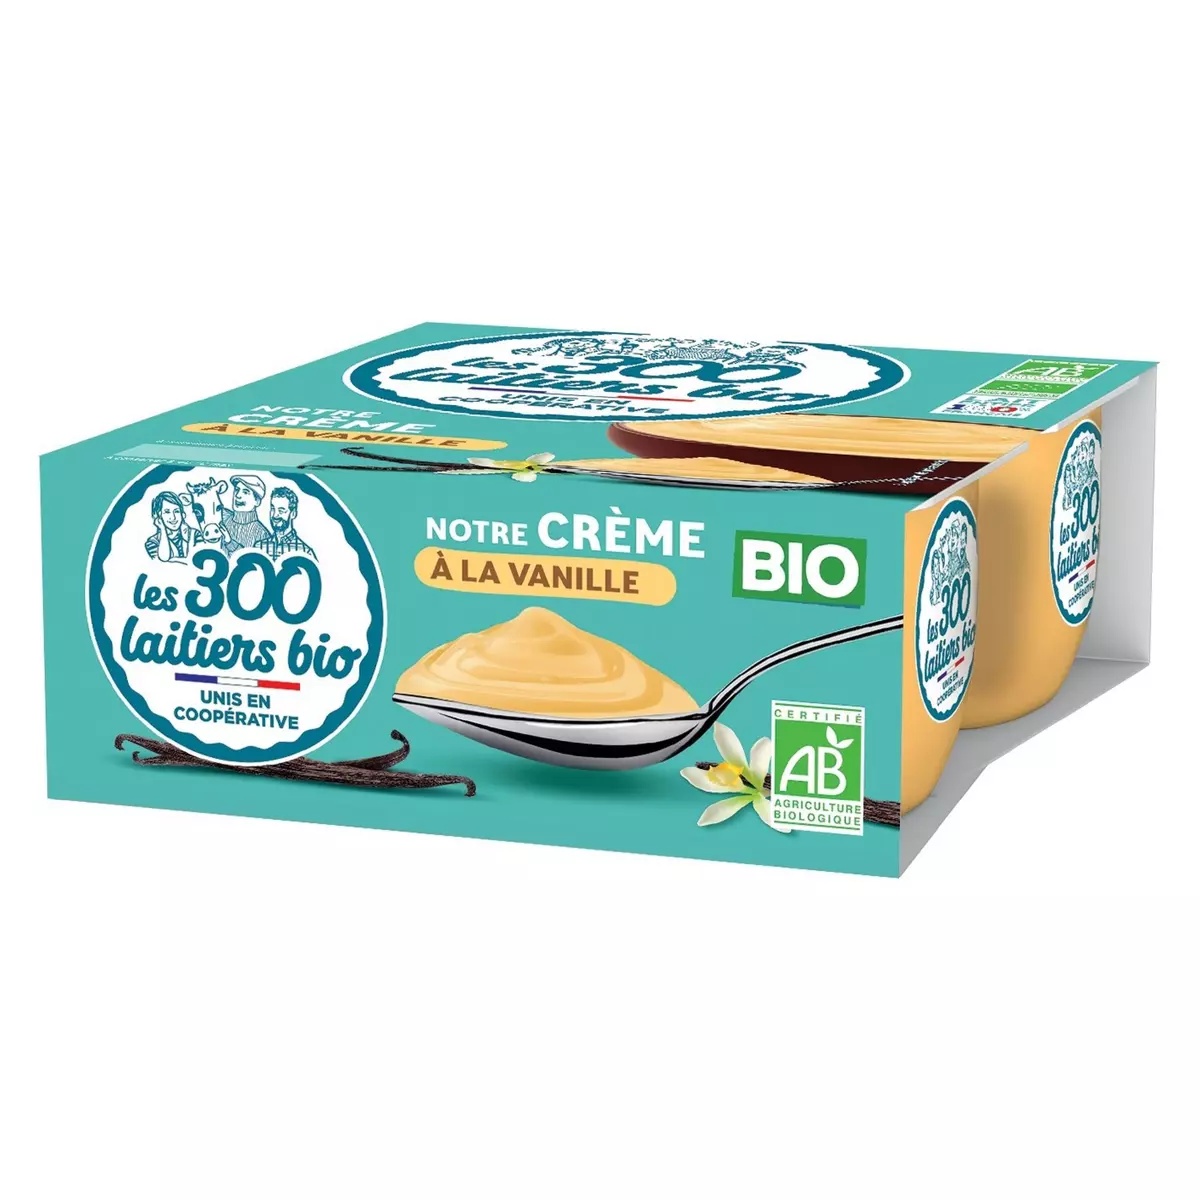 LES 300 LAITIERS BIO Crème à la vanille bio 4x95g